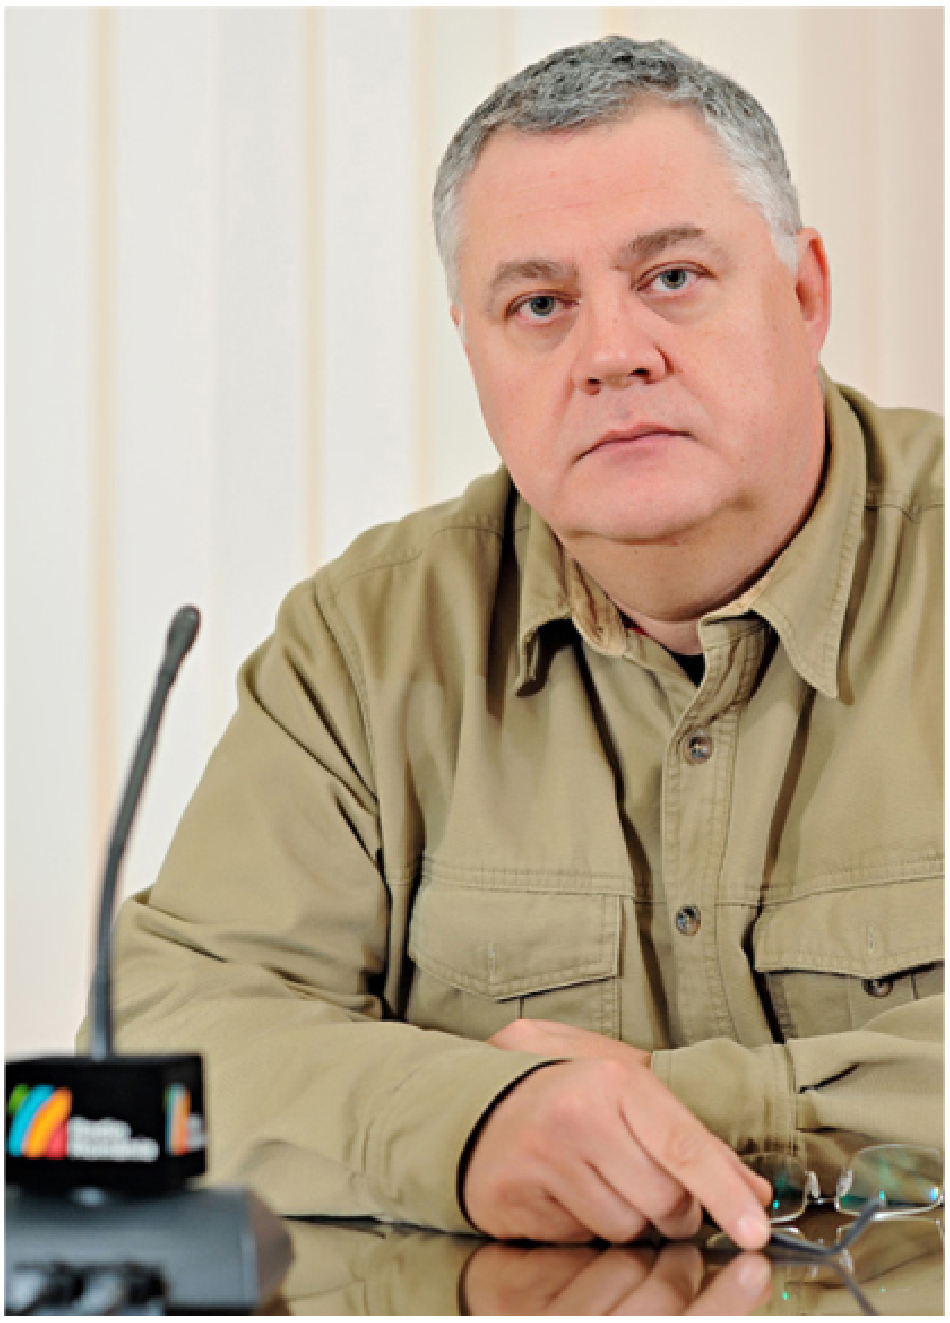 Ovidiu Miculescu, PDG de la Société roumaine de radiodiffusion